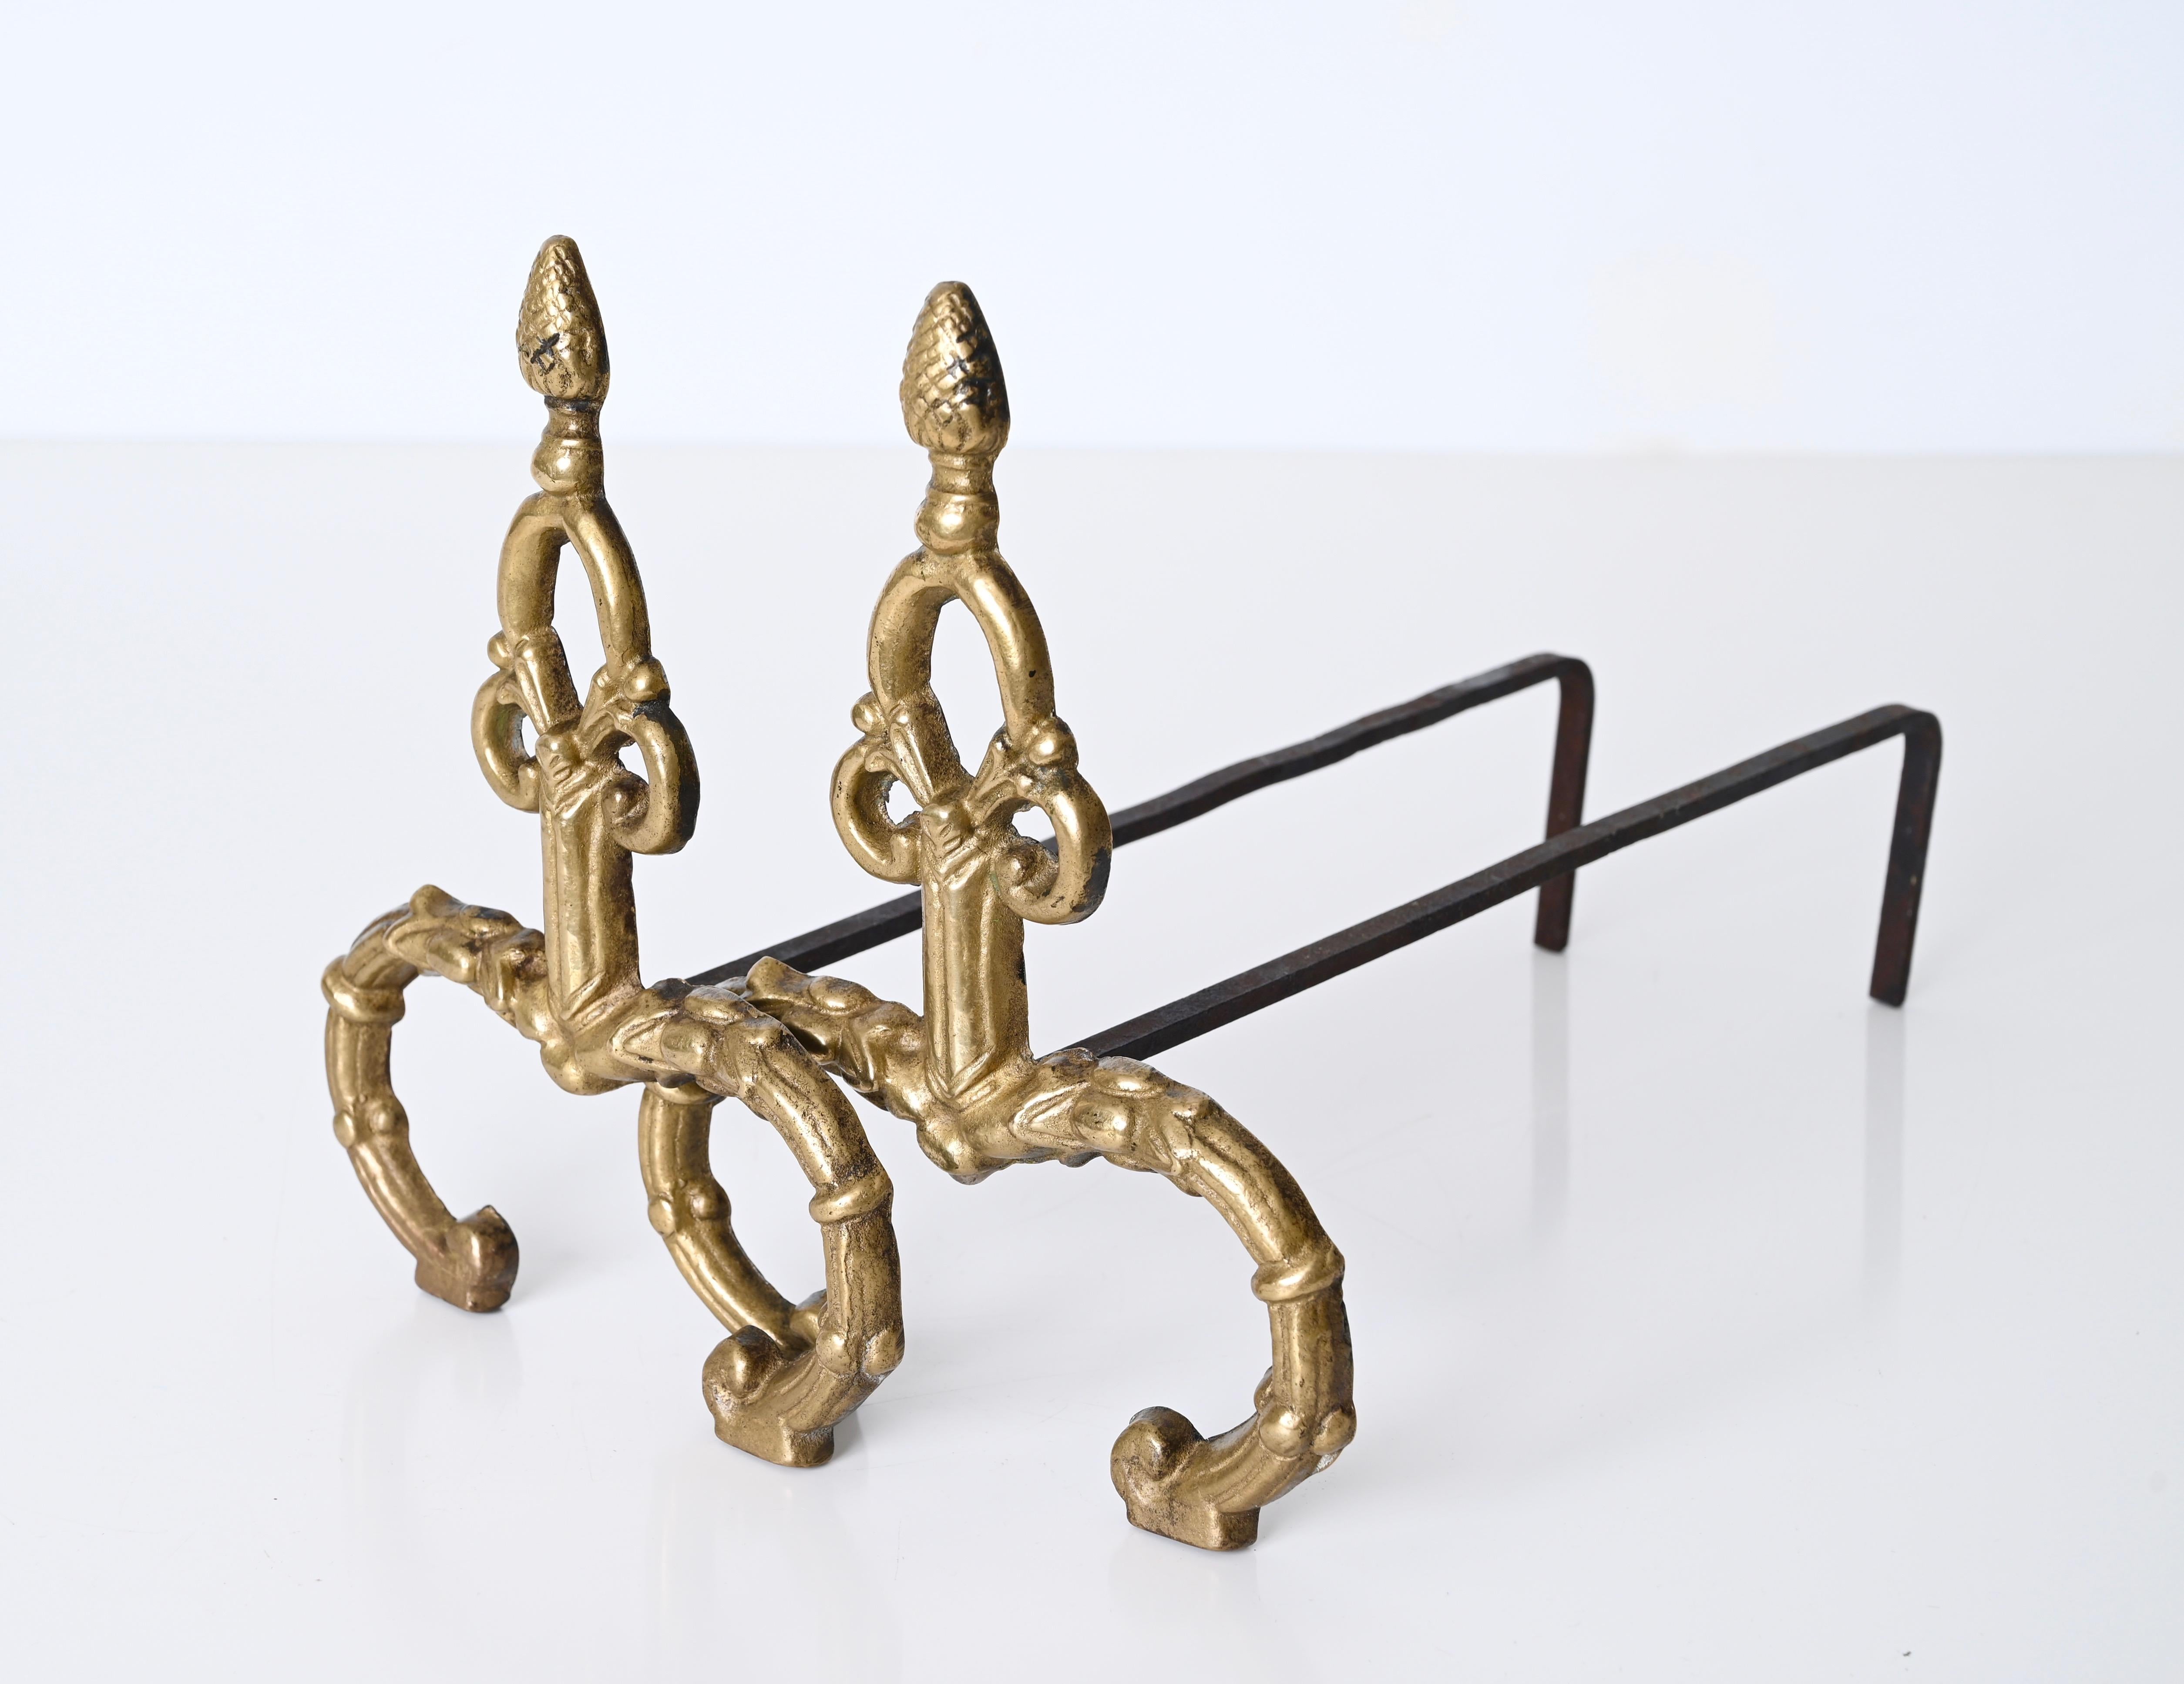 Kostbares Paar Andirons aus vergoldeter Bronze und geschmiedetem Eisen im Stil Louis XV. Diese atemberaubenden Feuerböcke wurden in den 1940er Jahren in Italien hergestellt.

Die Vorderseite dieser Andirons ist aus geschmiedeter, vergoldeter Bronze